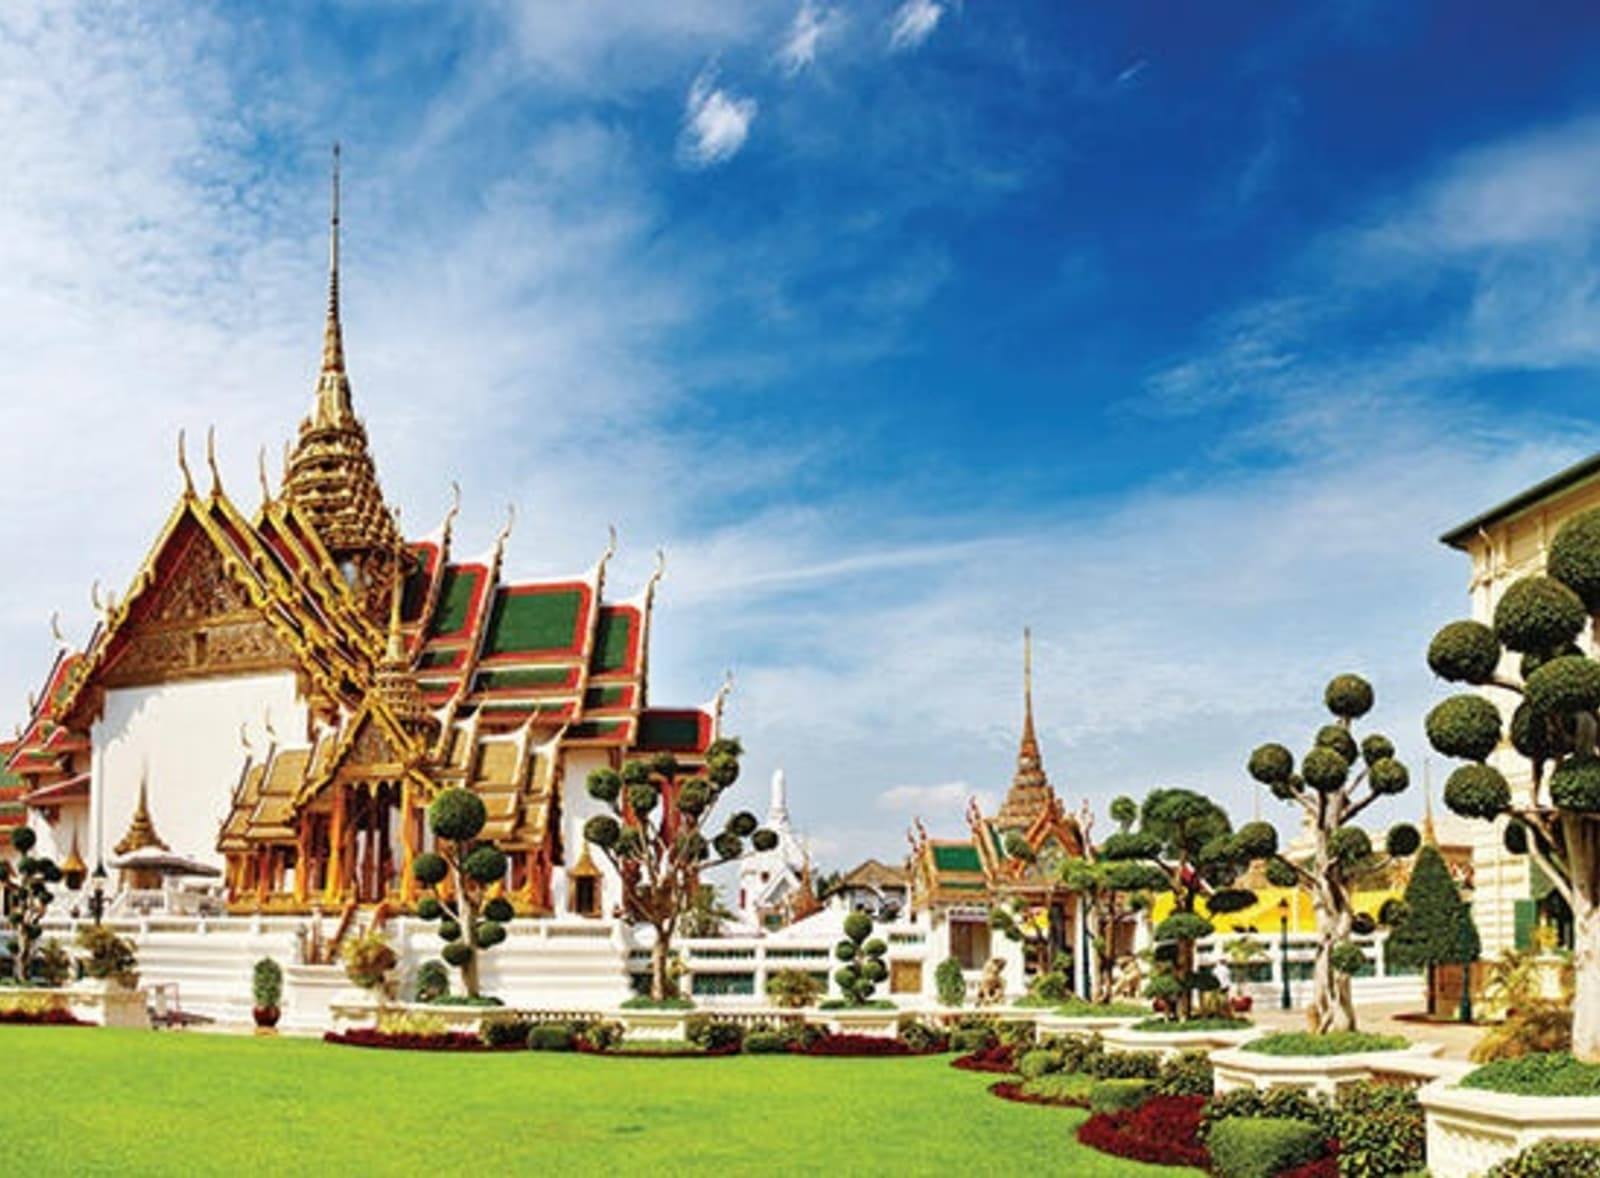 rs-grand-palace-bangkok.jpeg